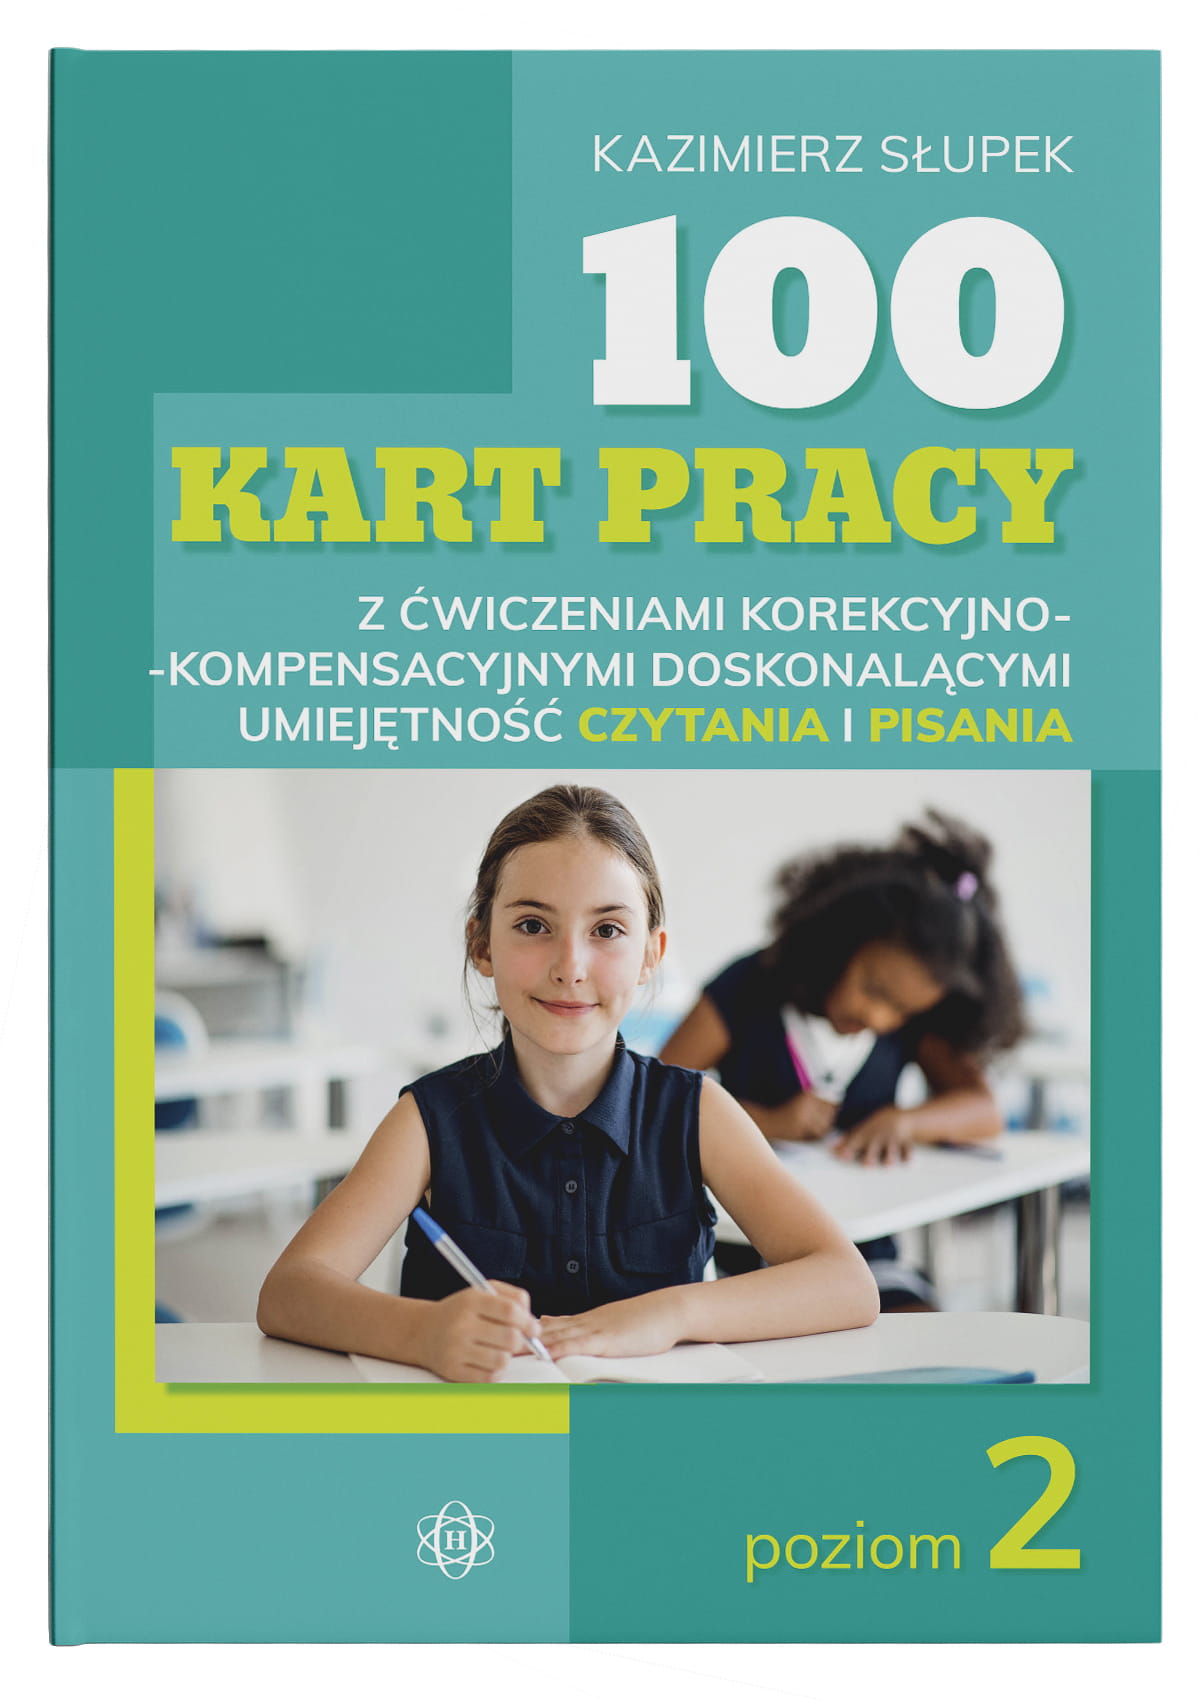 100 kart pracy z ćwiczeniami korekcyjno-kompensacyjnymi ułatwiającymi naukę czytania i pisania. Pakiet